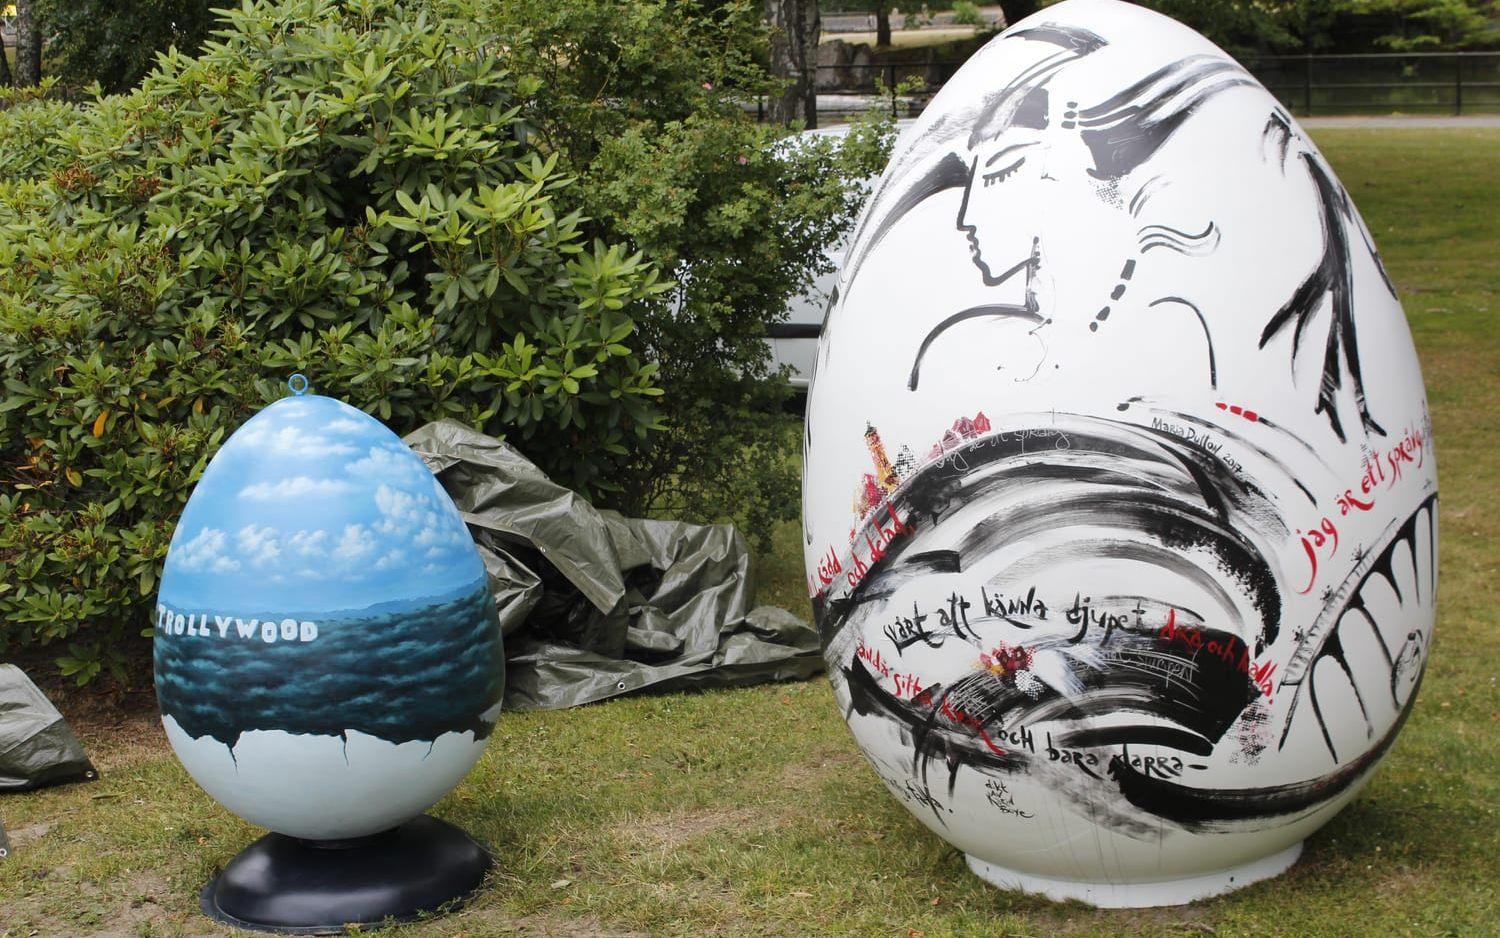 Stora och lilla är det sjunde respektive åttonde ägget i konstprojektet, där äldre äggmedlemmar är utplacerade på olika håll i Trollhättan.